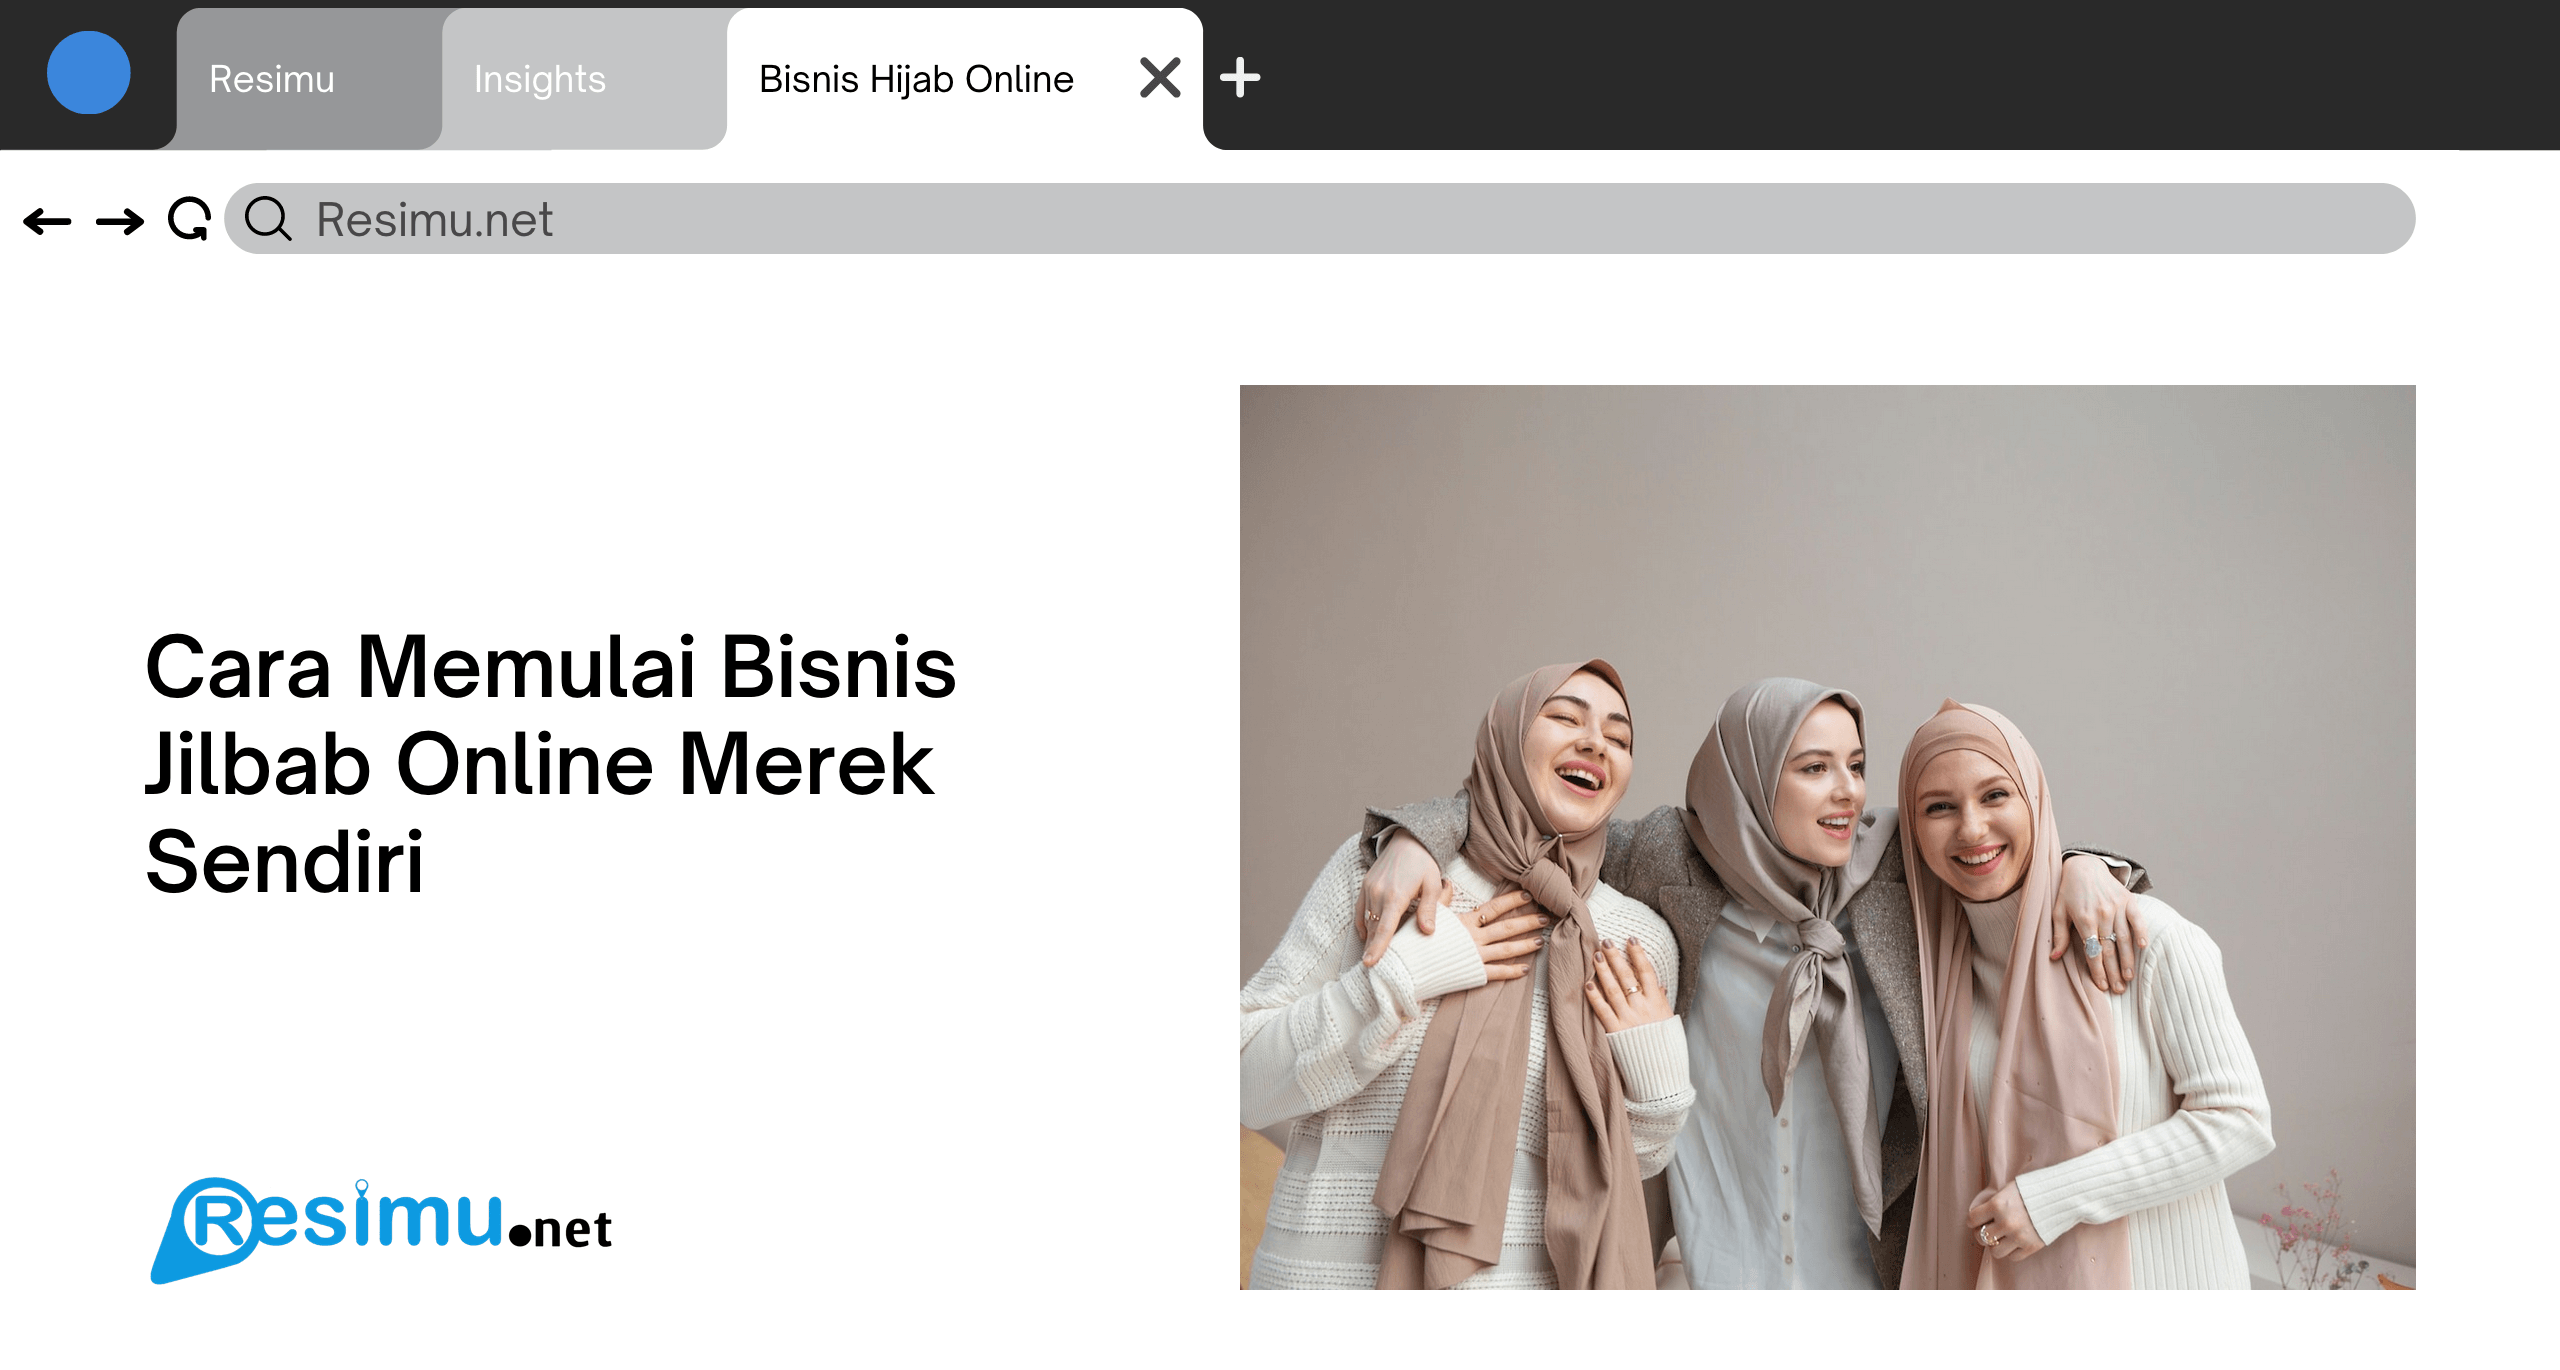 Cara Memulai Bisnis Jilbab Online Merek Sendiri